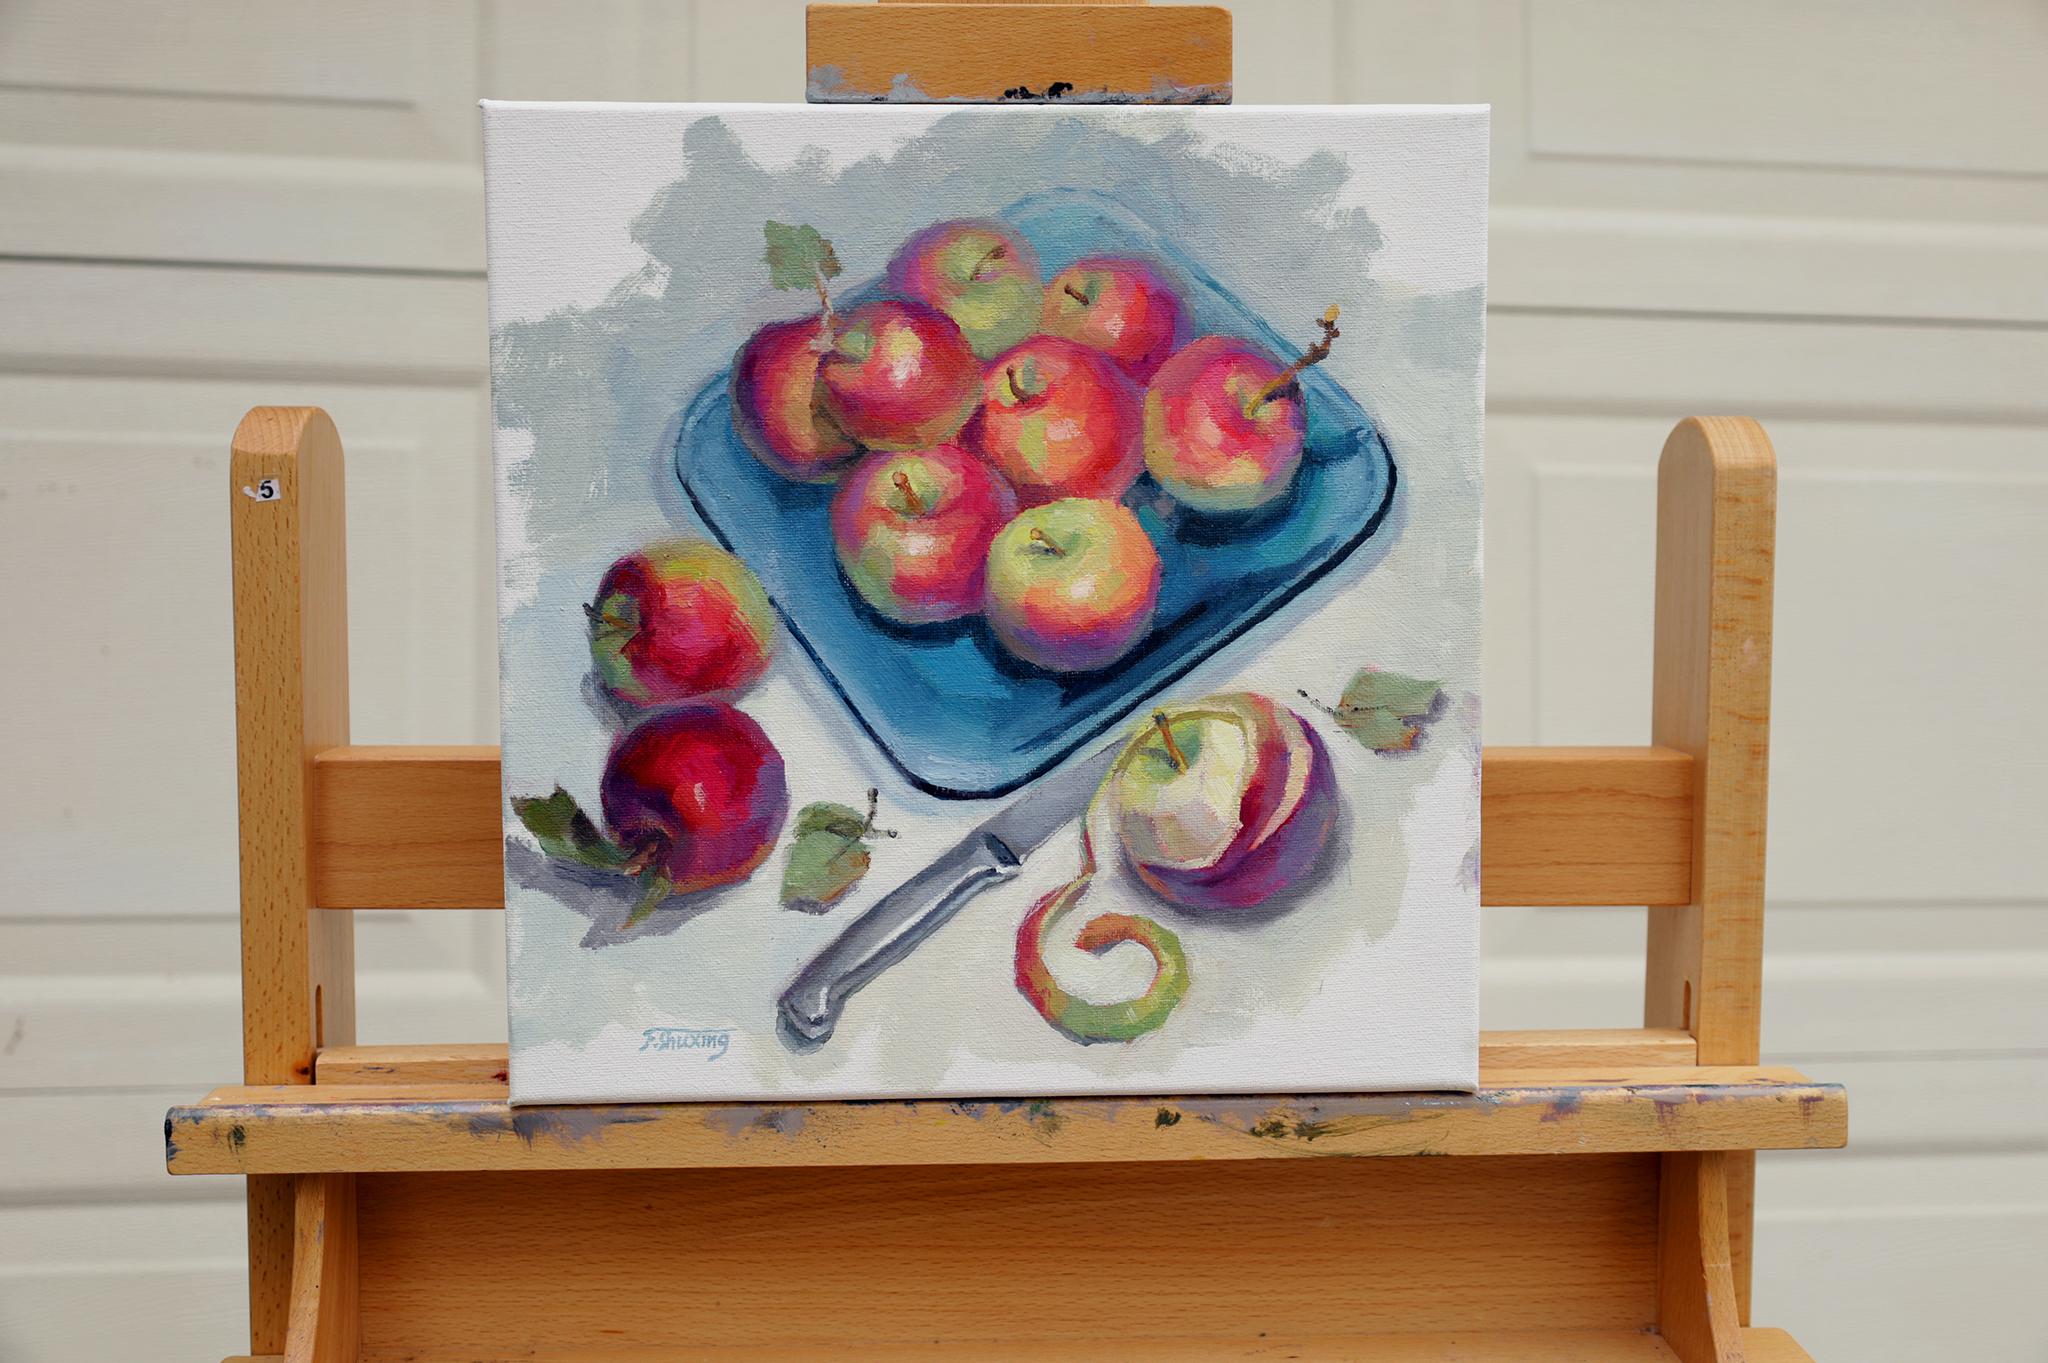 <p>Commentaires de l'artiste<br />L'artiste Shuzing Fan représente un bouquet de pommes par des touches picturales avec sa palette de couleurs vives et son coup de pinceau typiques. Une pomme à moitié épluchée repose sur la surface à côté d'un